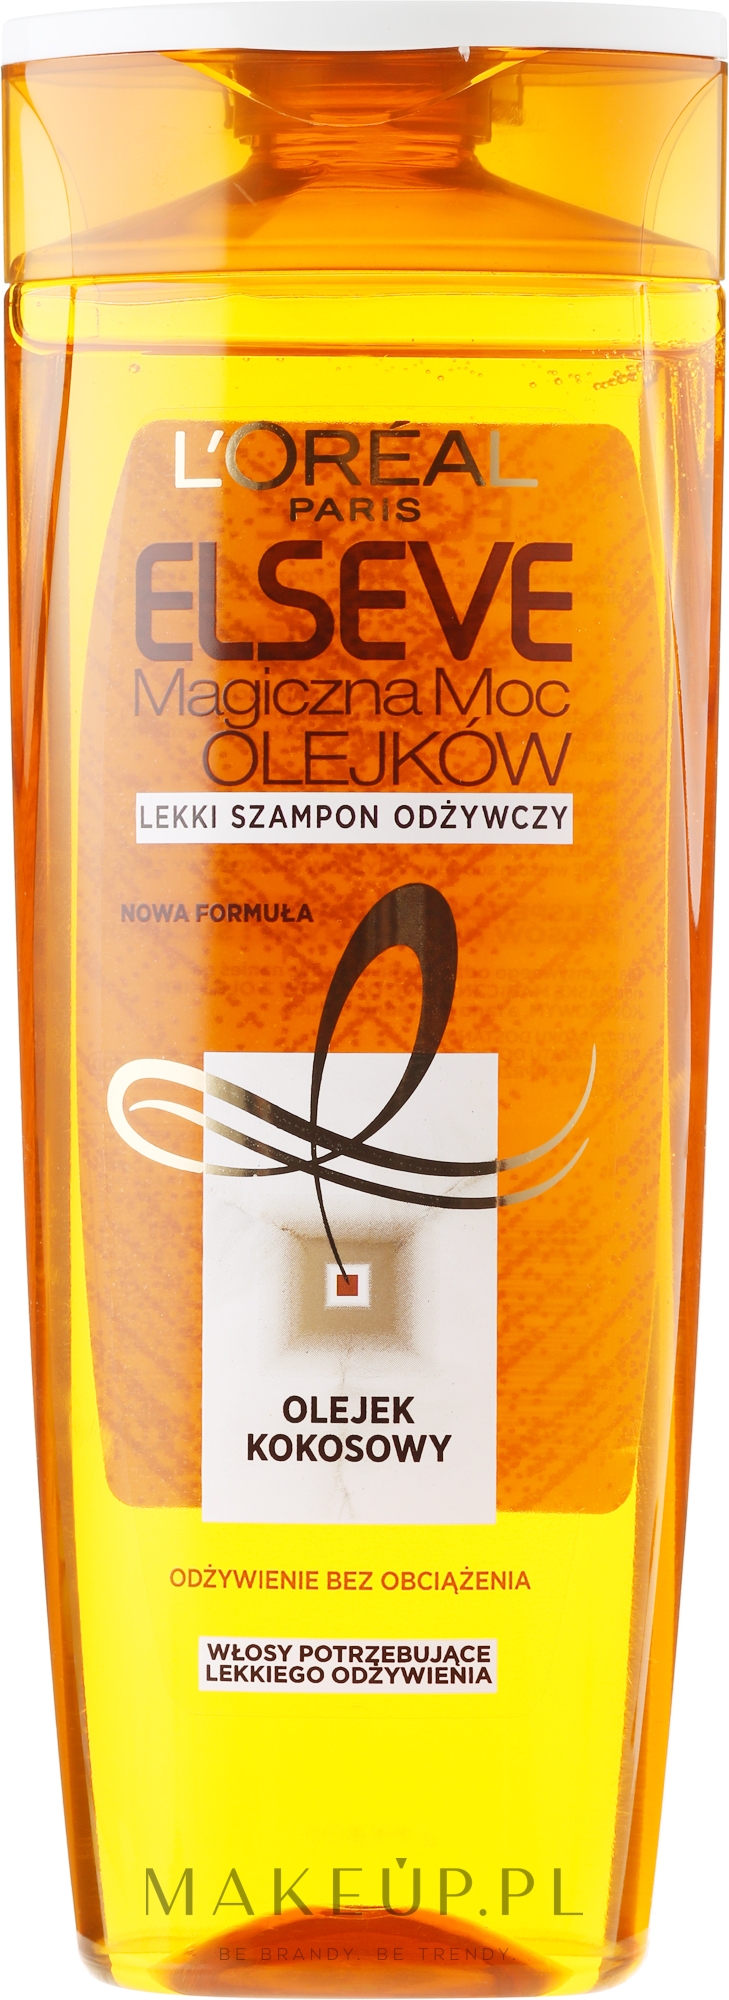 szampon loreal zloty